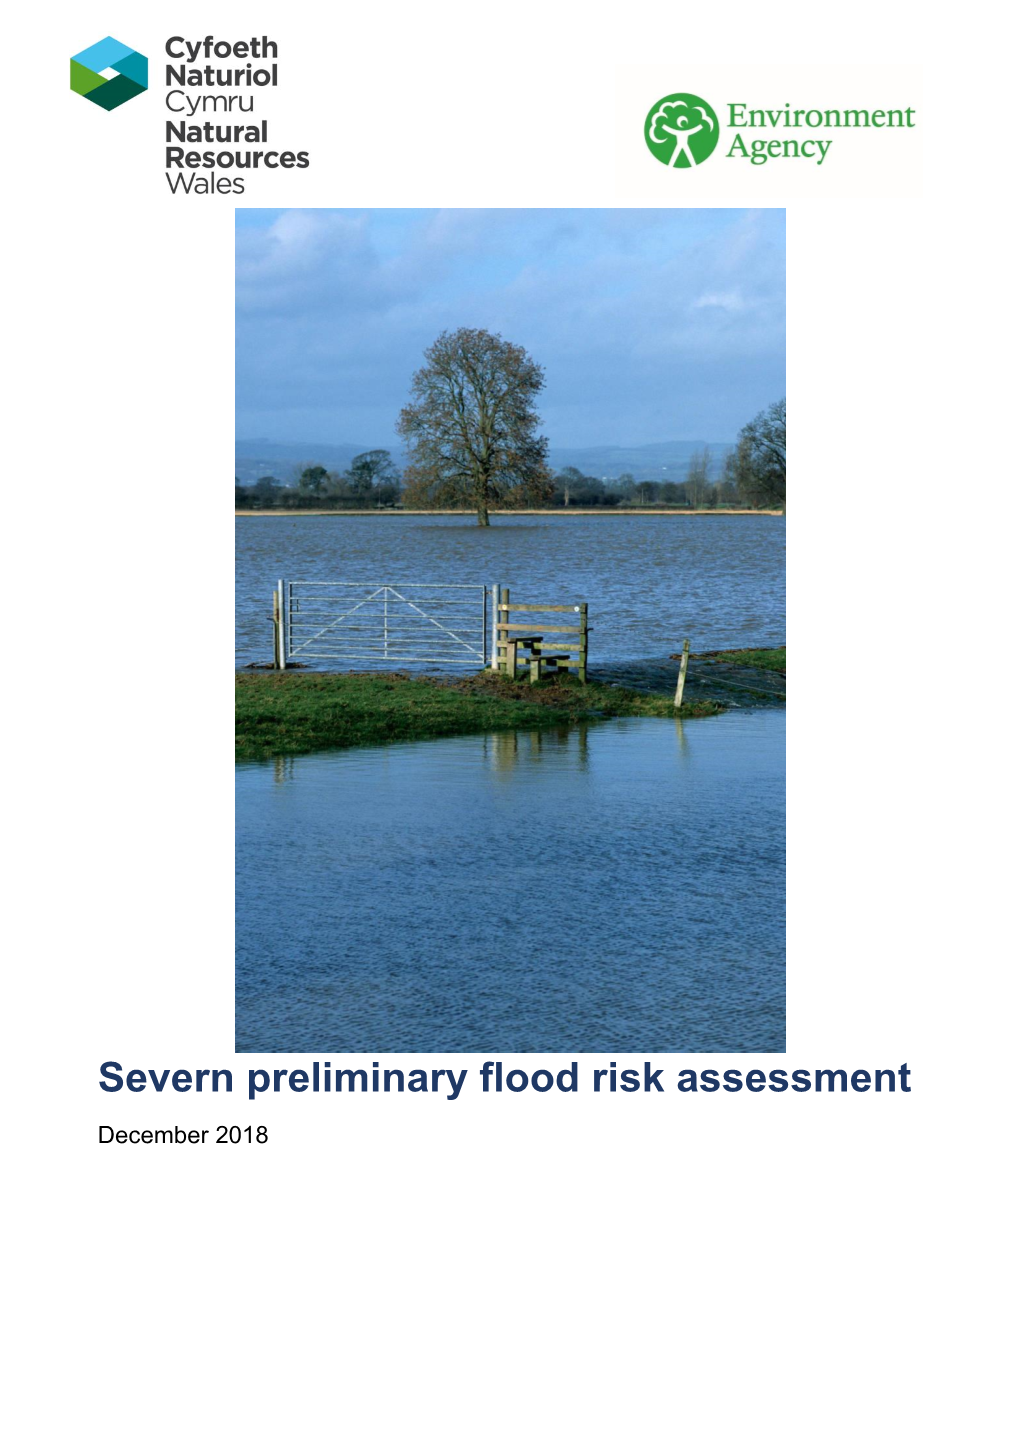 Severn Preliminary Flood Risk Assessment December 2018